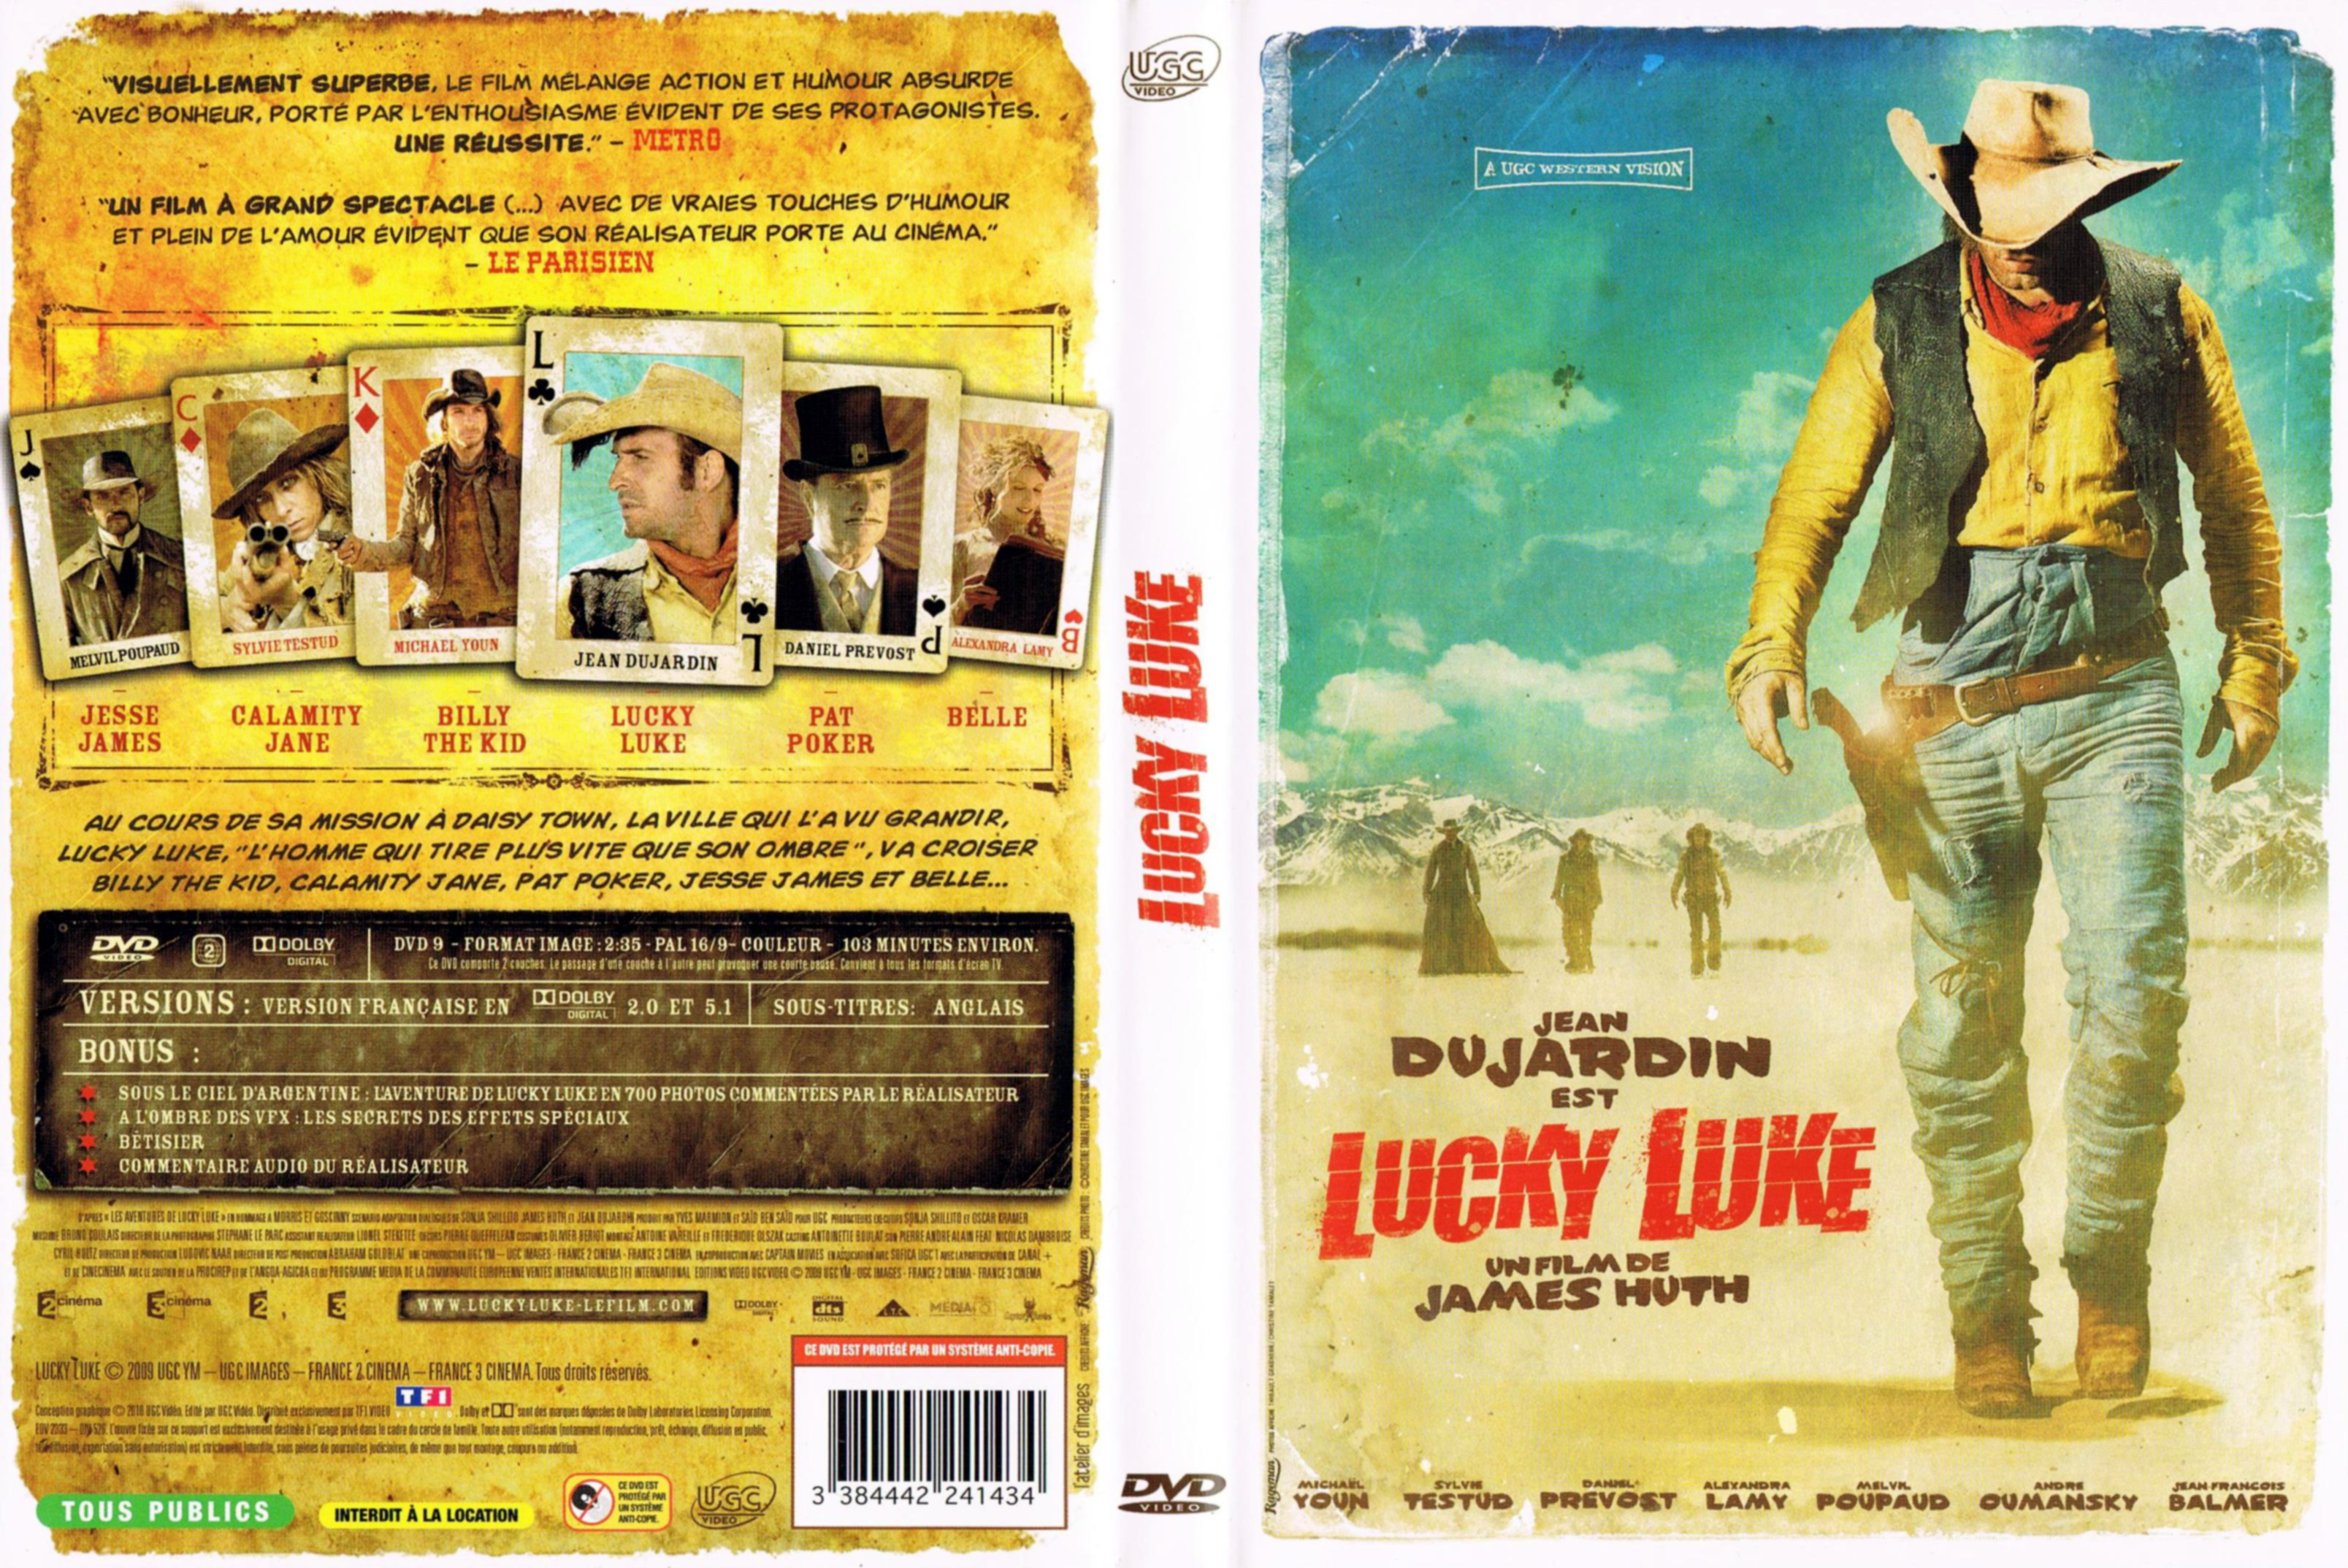 Jaquette DVD Lucky Luke (2009) v3